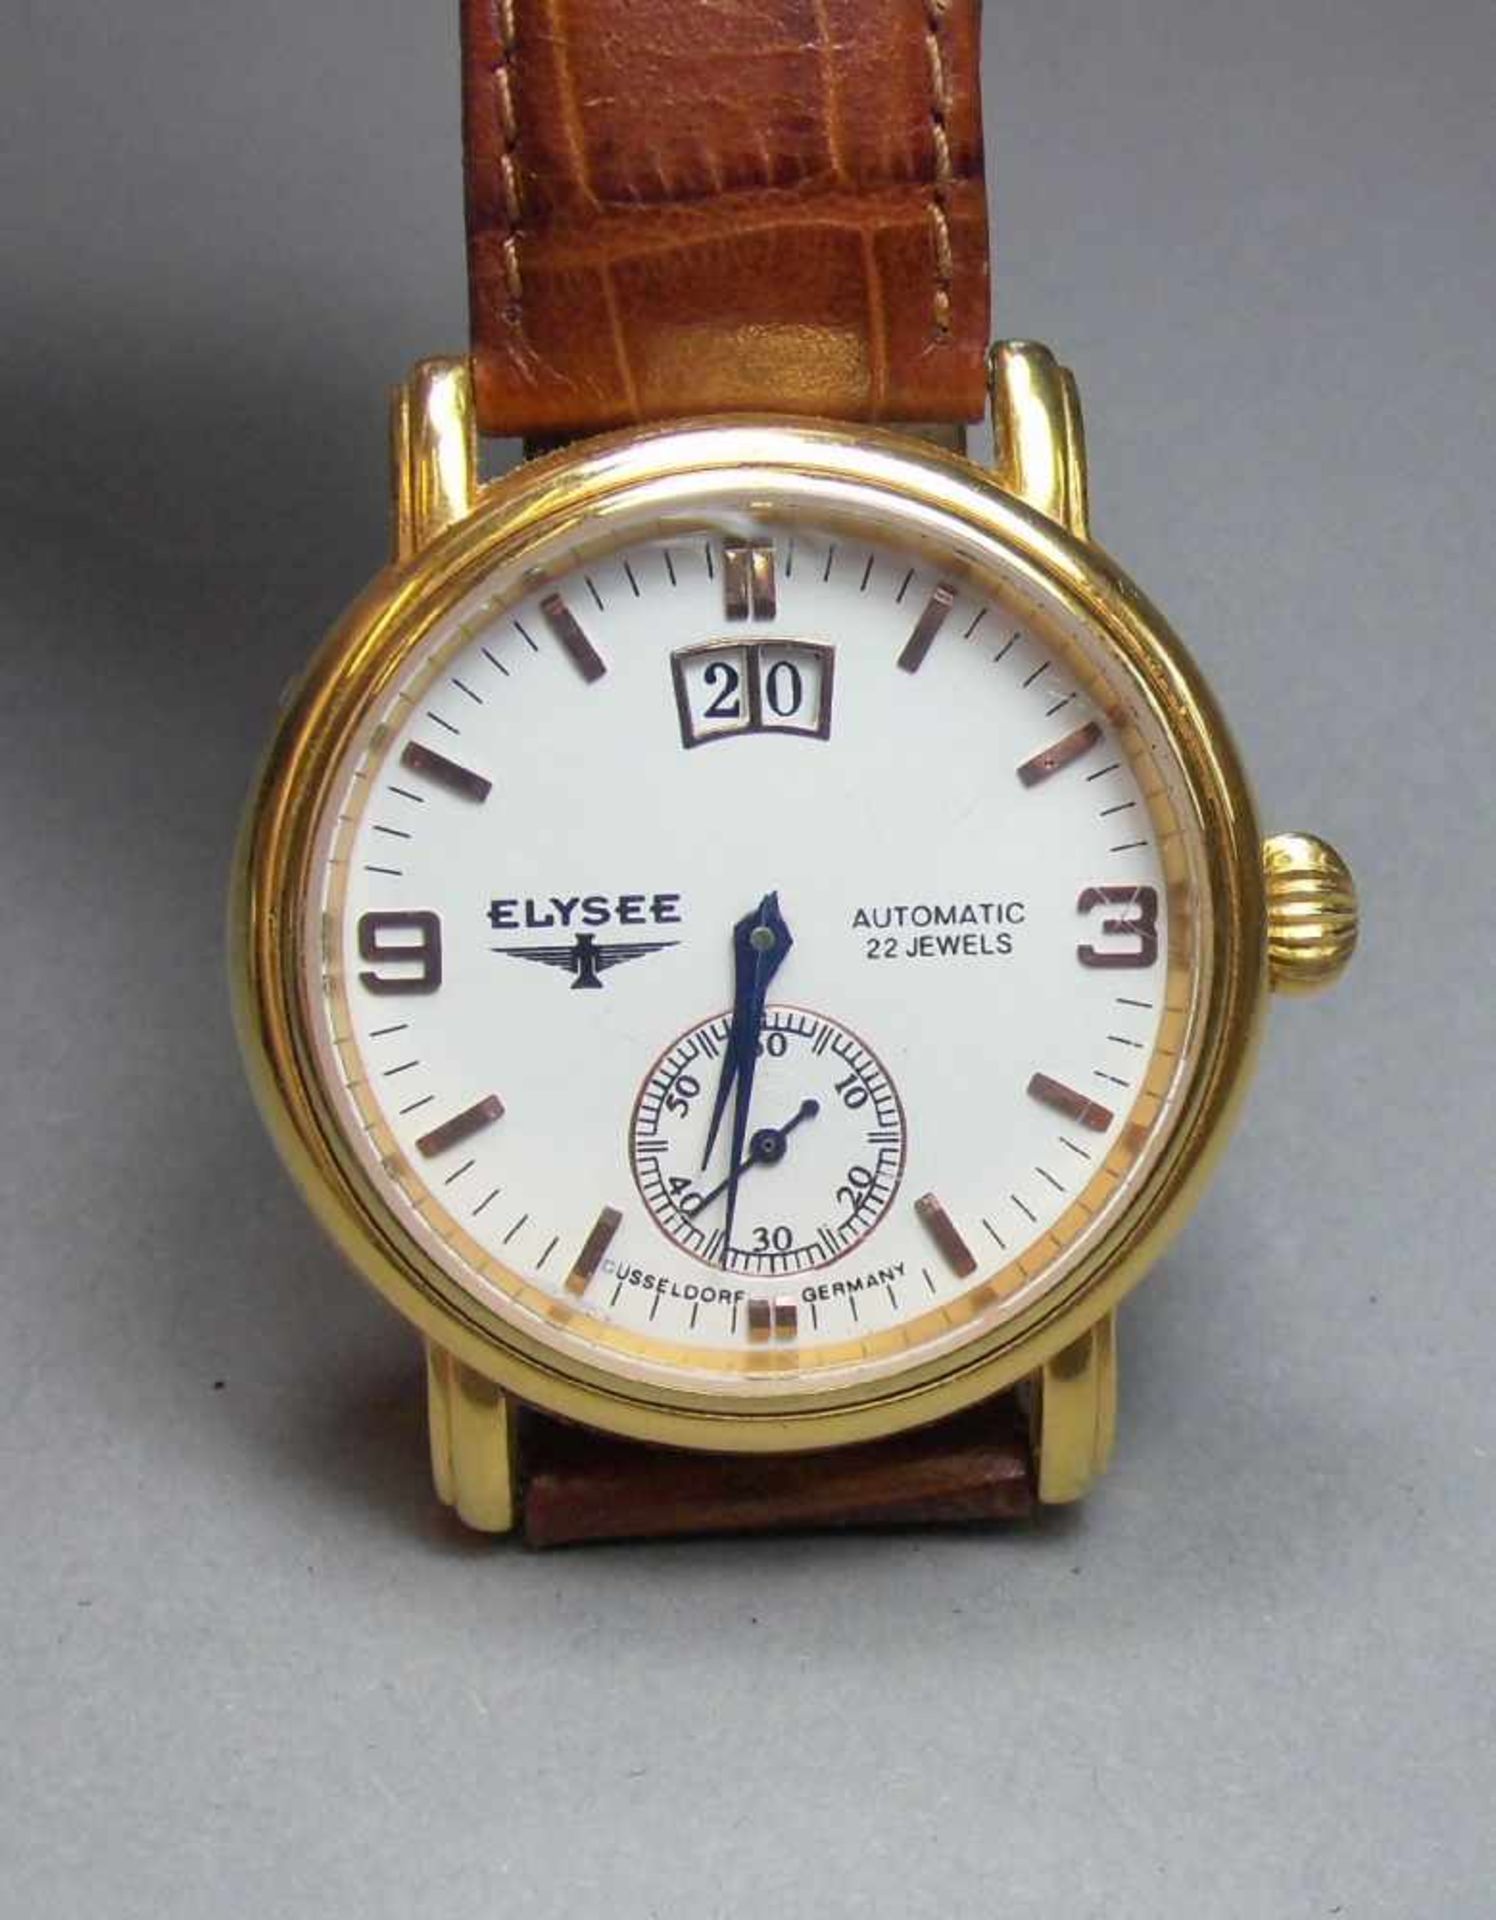 ARMBANDUHR / wristwatch, ELYSEE Uhren GmbH / Deutschland. Rundes goldfarbenes Edelstahlgehäuse mit